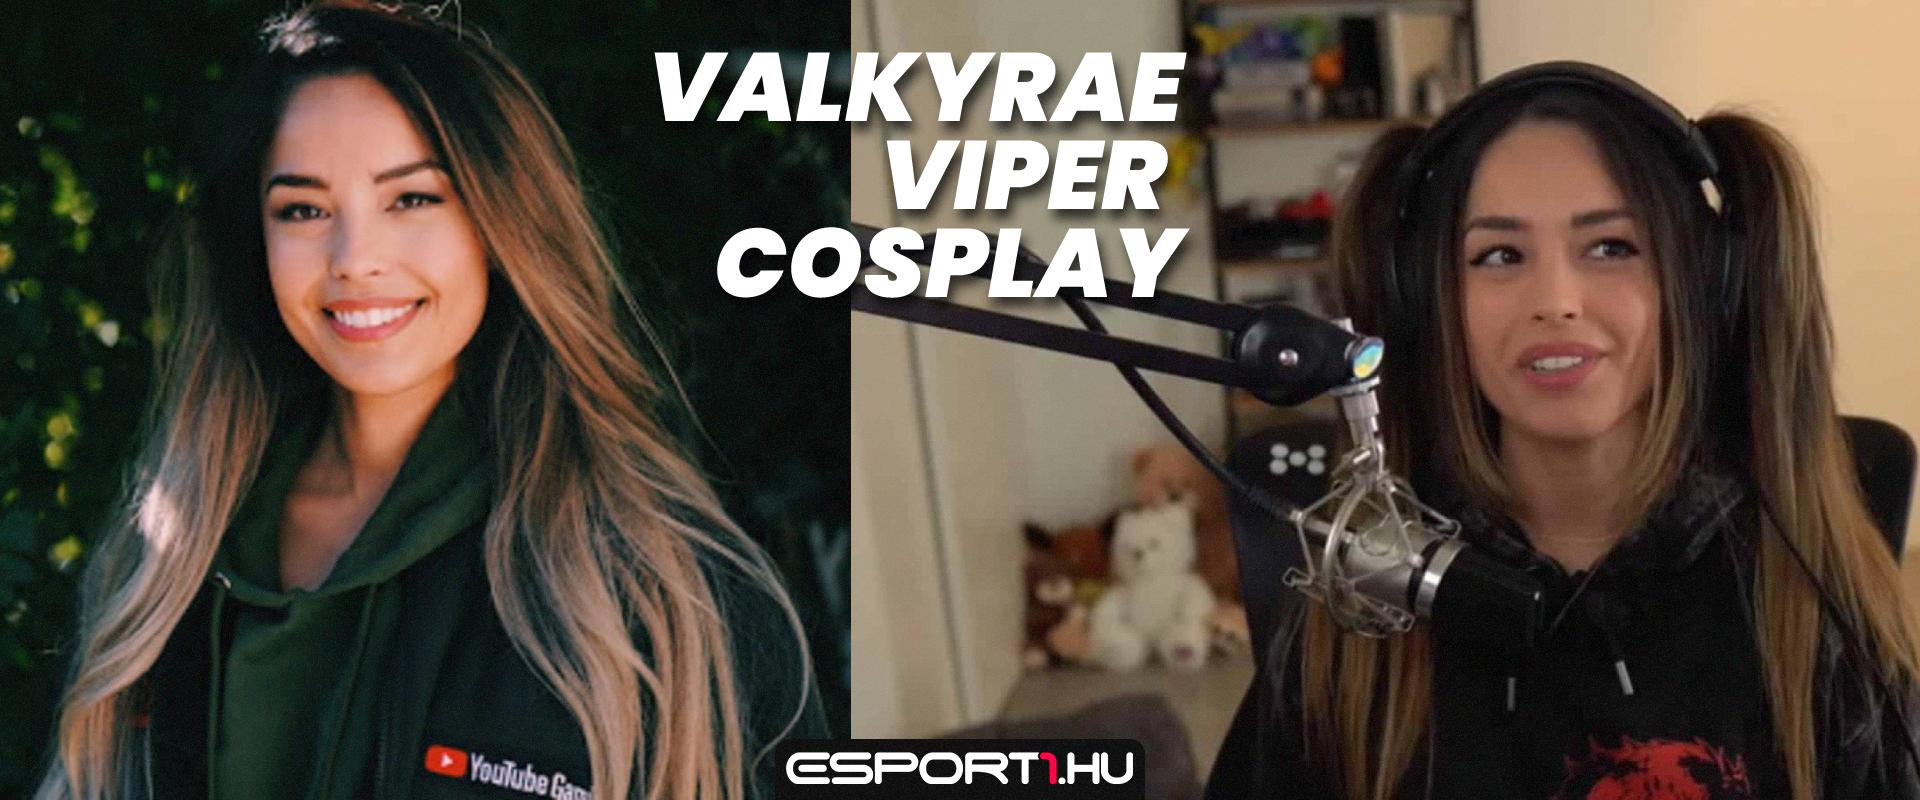 Valkyrae Viper cosplay kiegészítője miatt hangos az internet